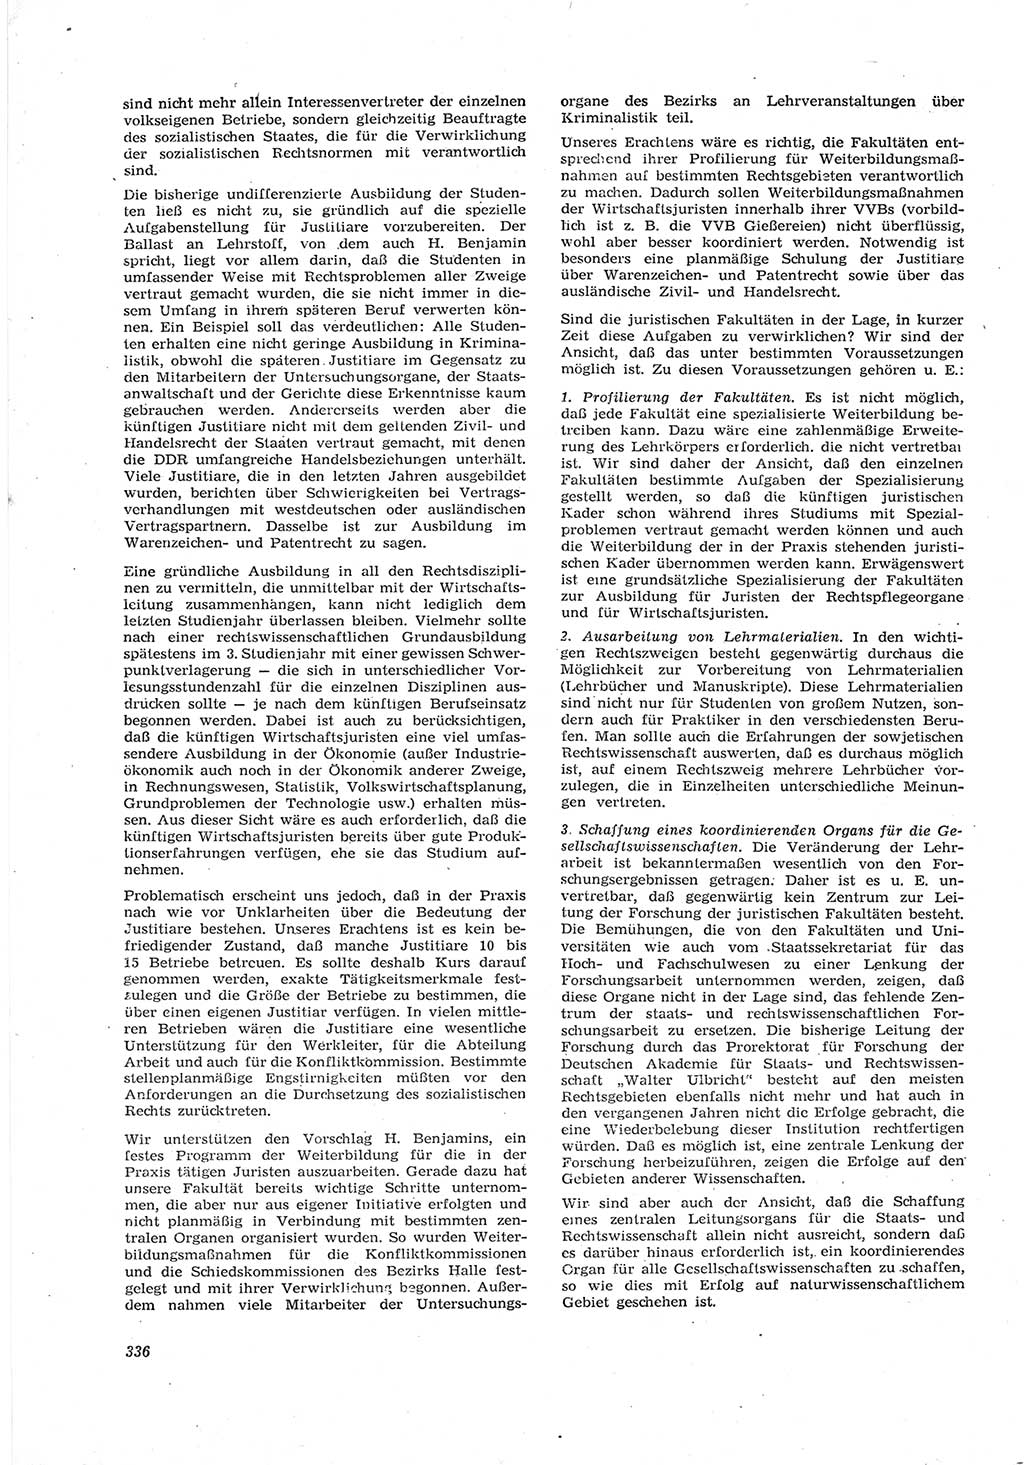 Neue Justiz (NJ), Zeitschrift für Recht und Rechtswissenschaft [Deutsche Demokratische Republik (DDR)], 17. Jahrgang 1963, Seite 336 (NJ DDR 1963, S. 336)